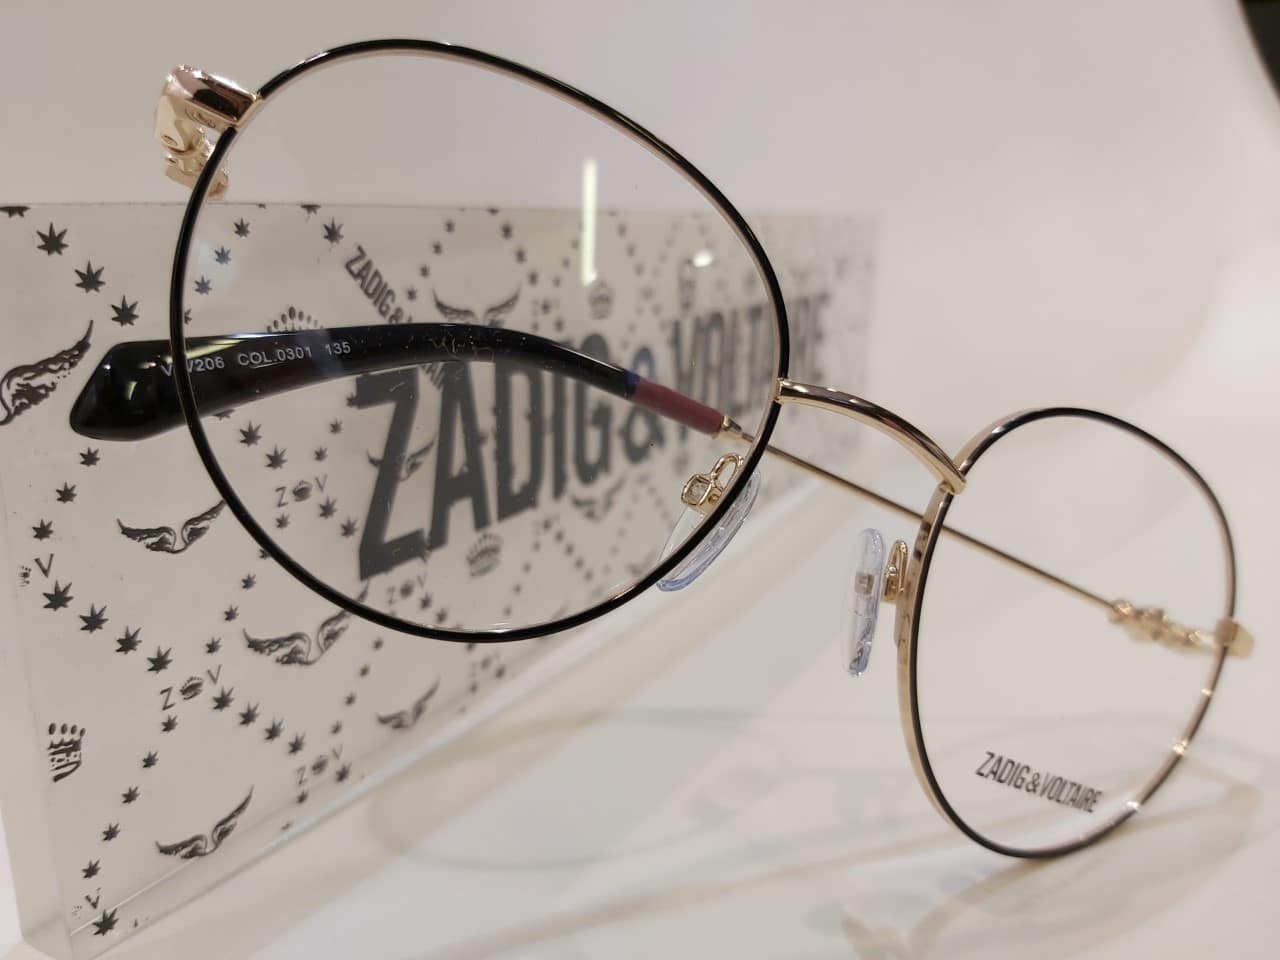 nouvelles lunettes zadig et voltaire 2019